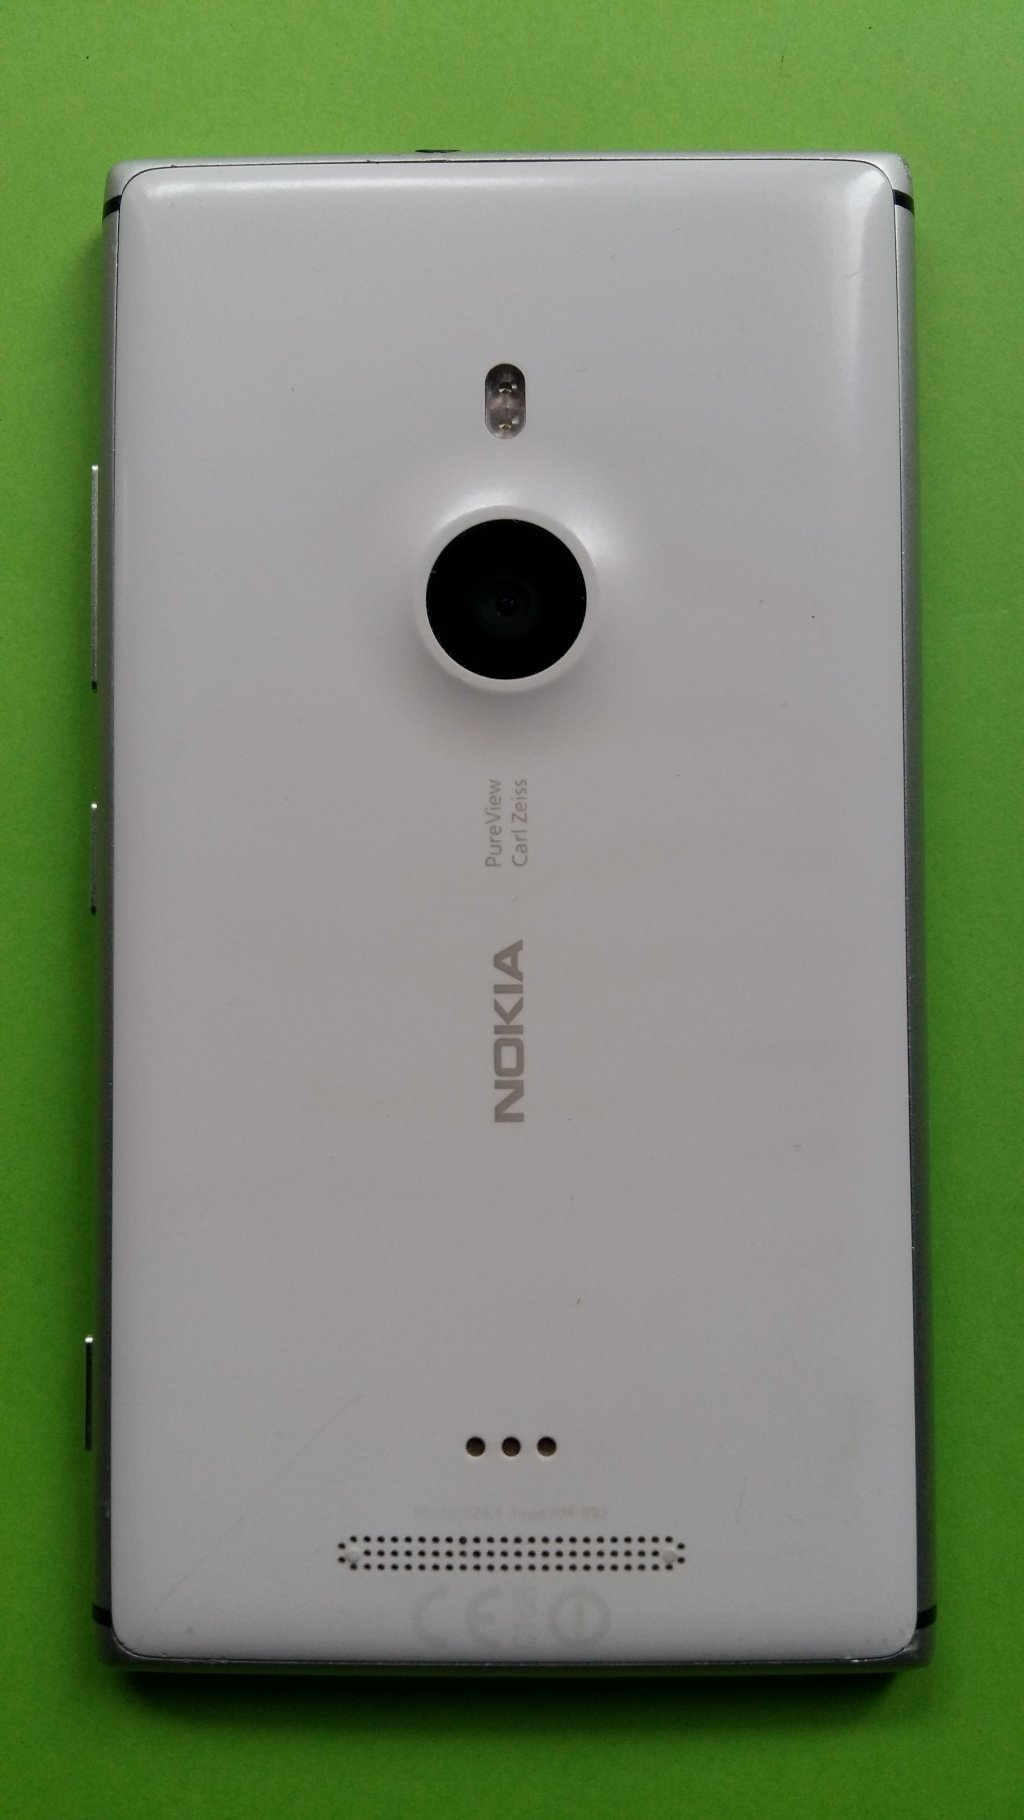 image-8050933-Nokia_925.1_Lumia_(2)2.w640.jpg